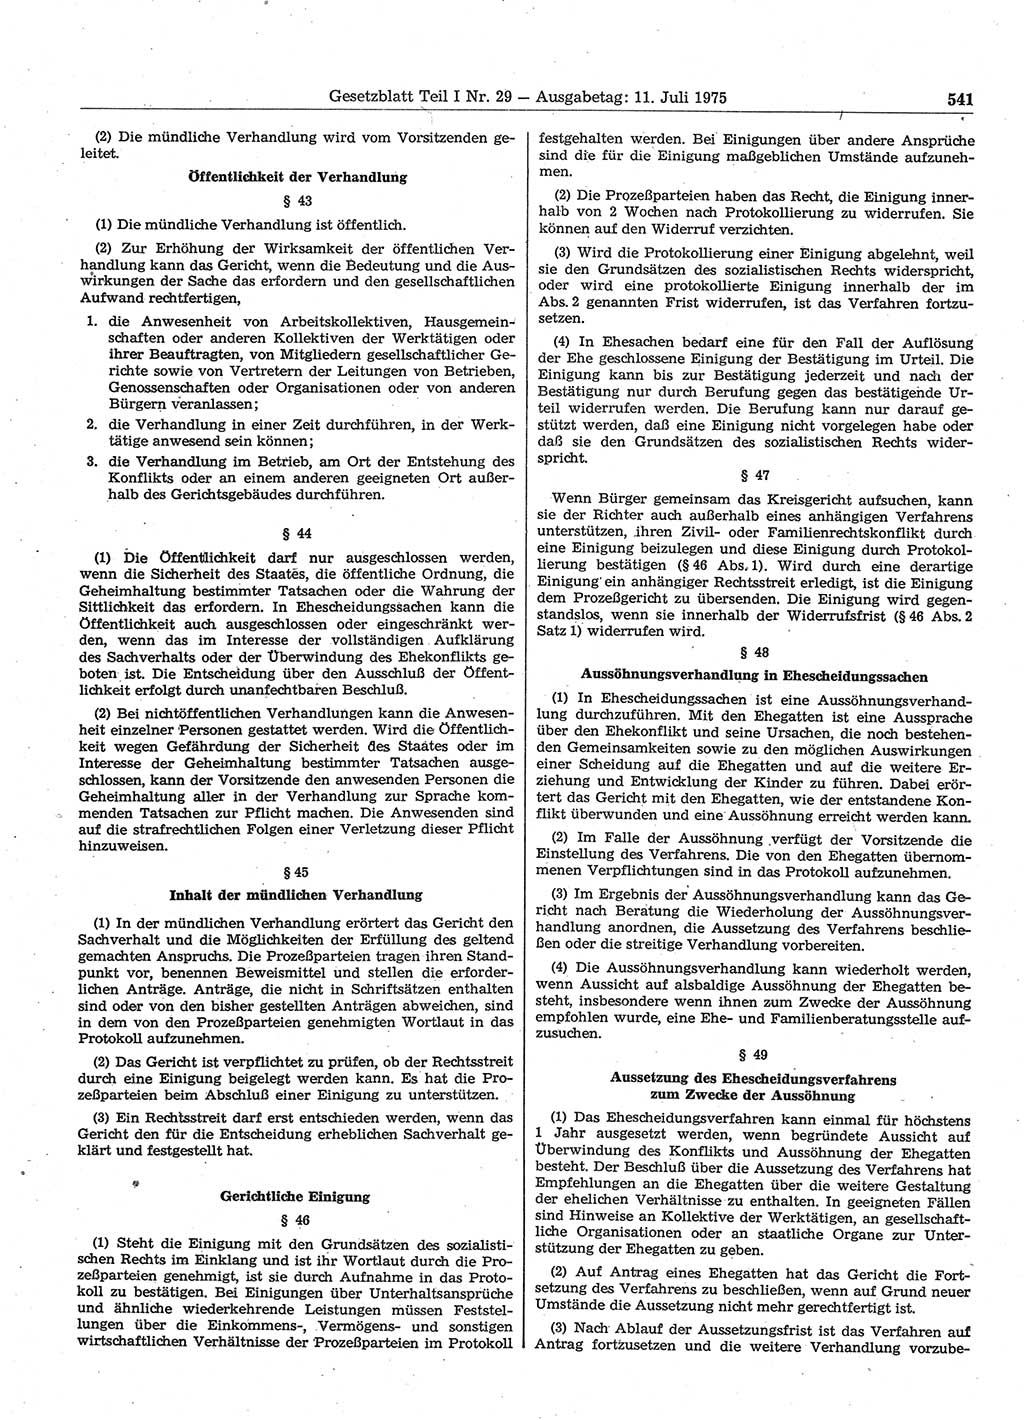 Gesetzblatt (GBl.) der Deutschen Demokratischen Republik (DDR) Teil Ⅰ 1975, Seite 541 (GBl. DDR Ⅰ 1975, S. 541)